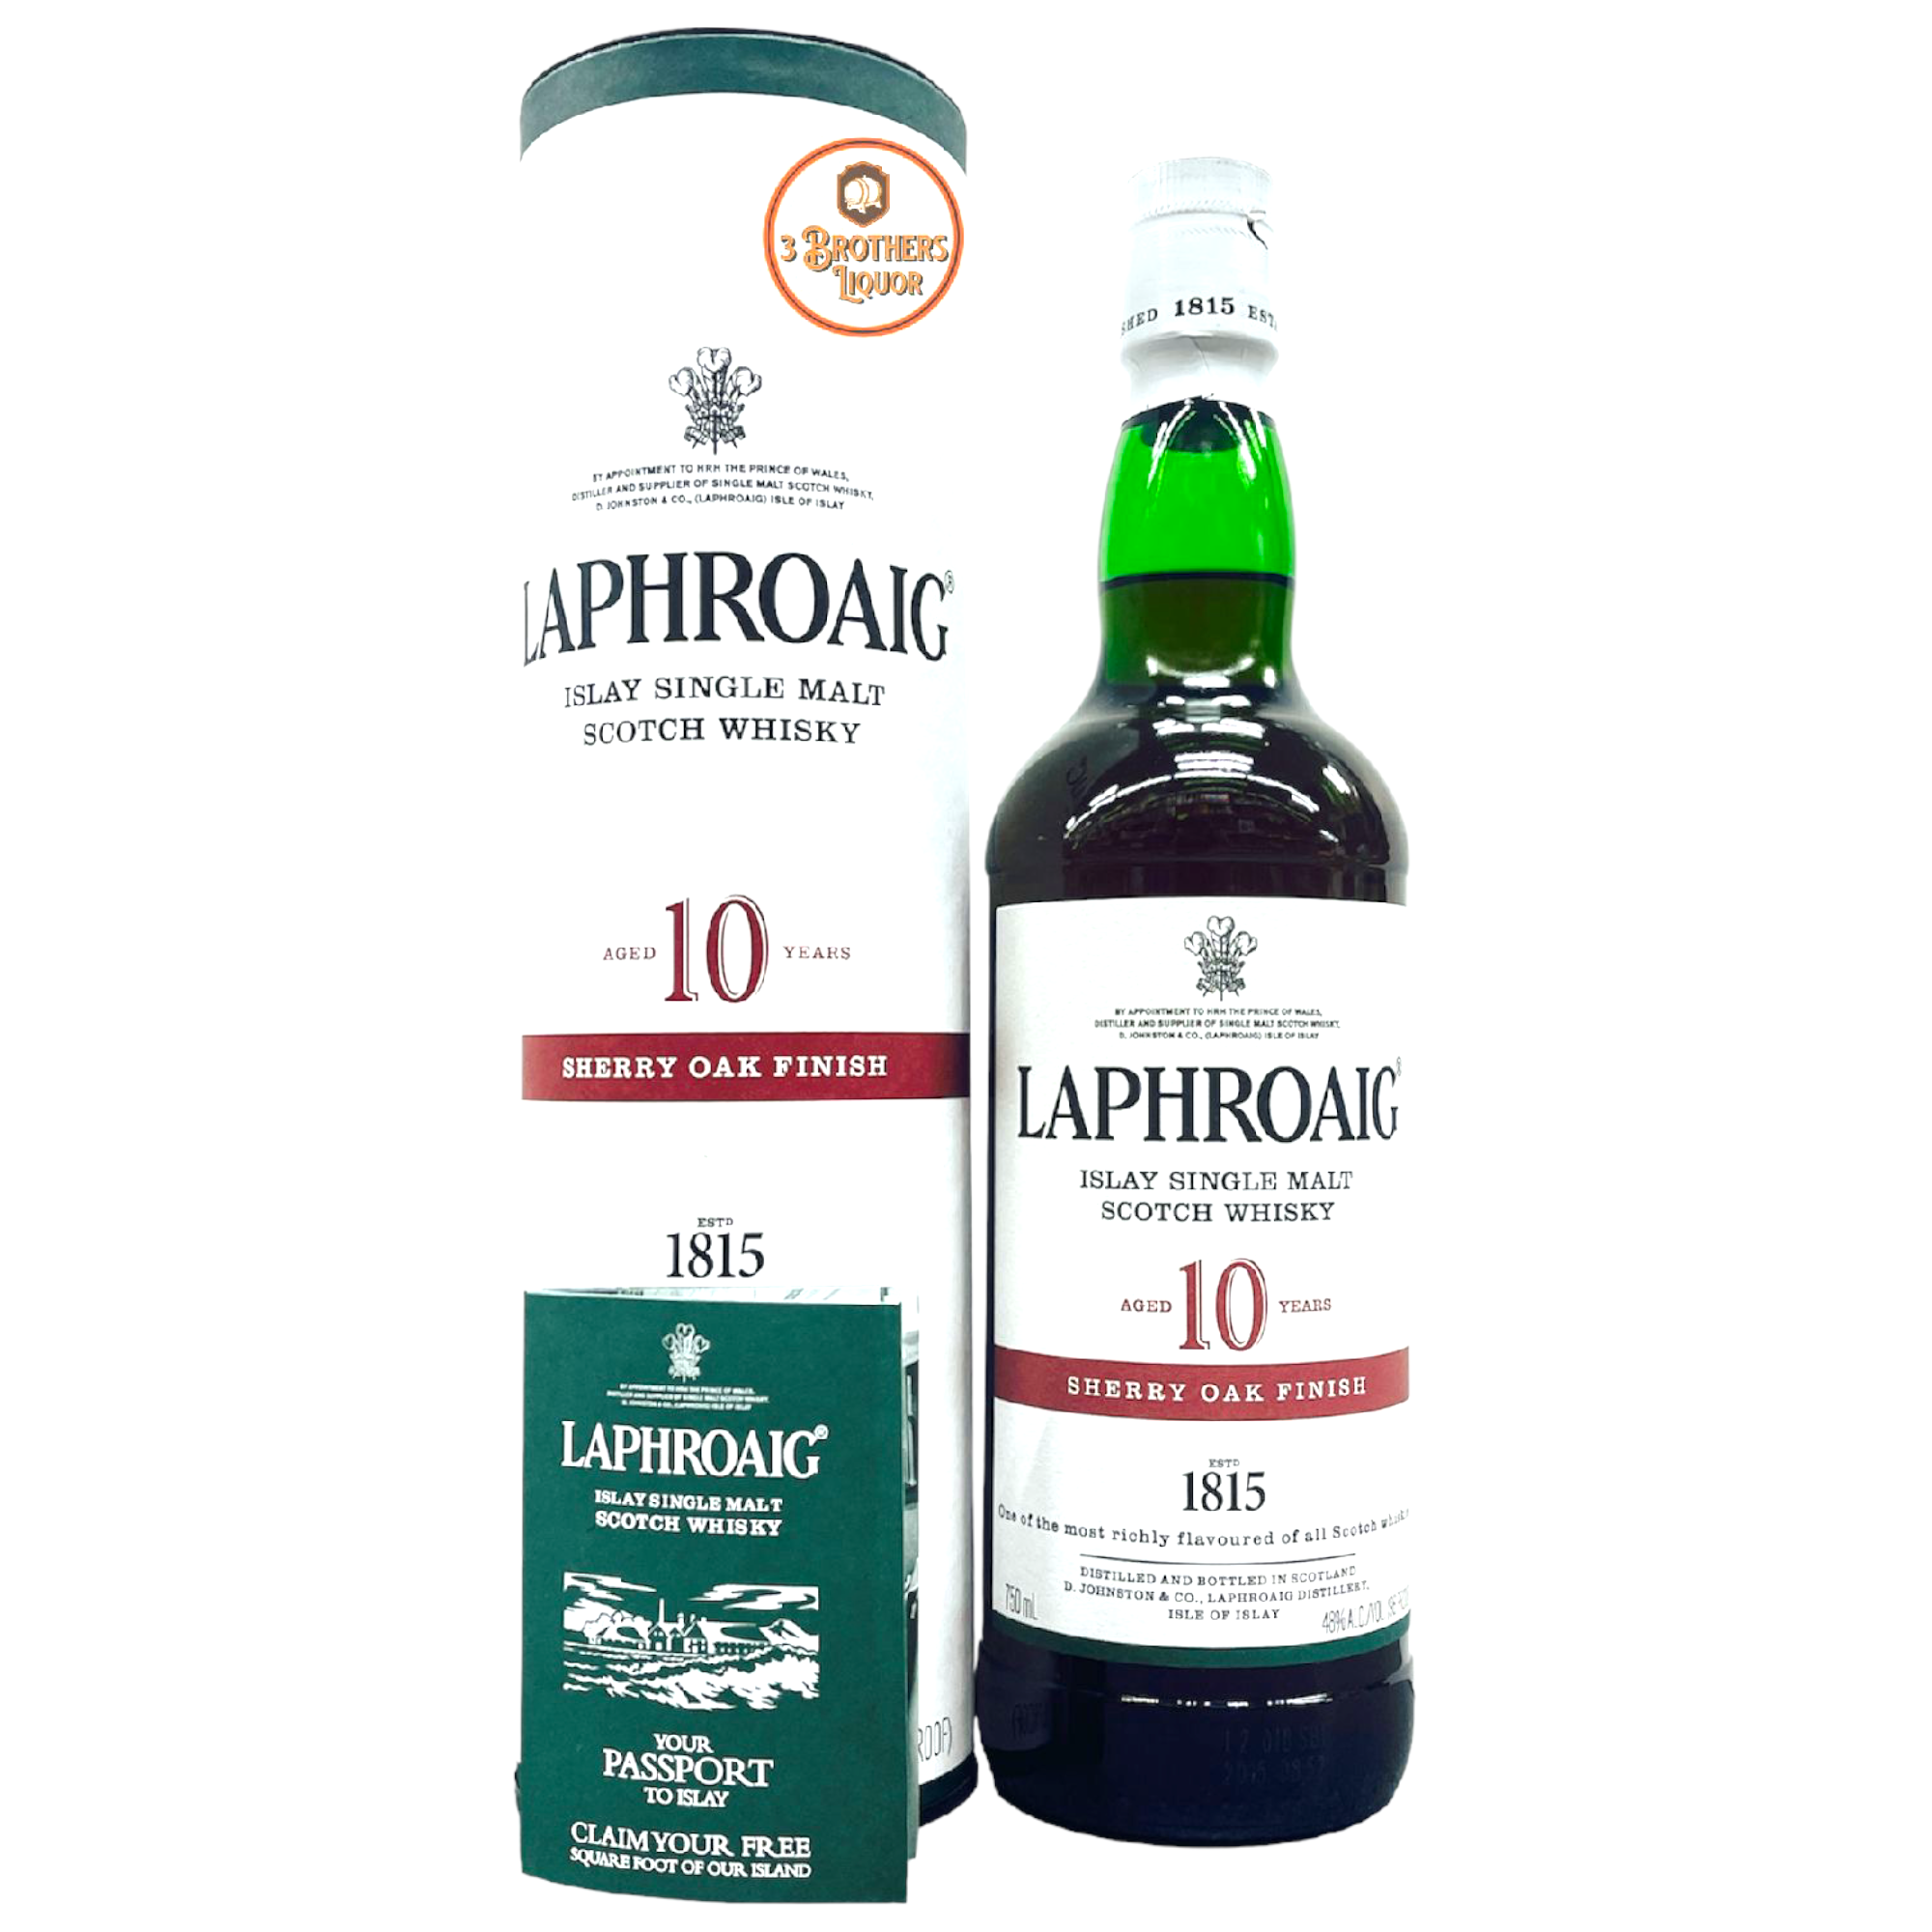 Whisky Laphroaig 10 years old Sherry Oak, 48°, Scotland